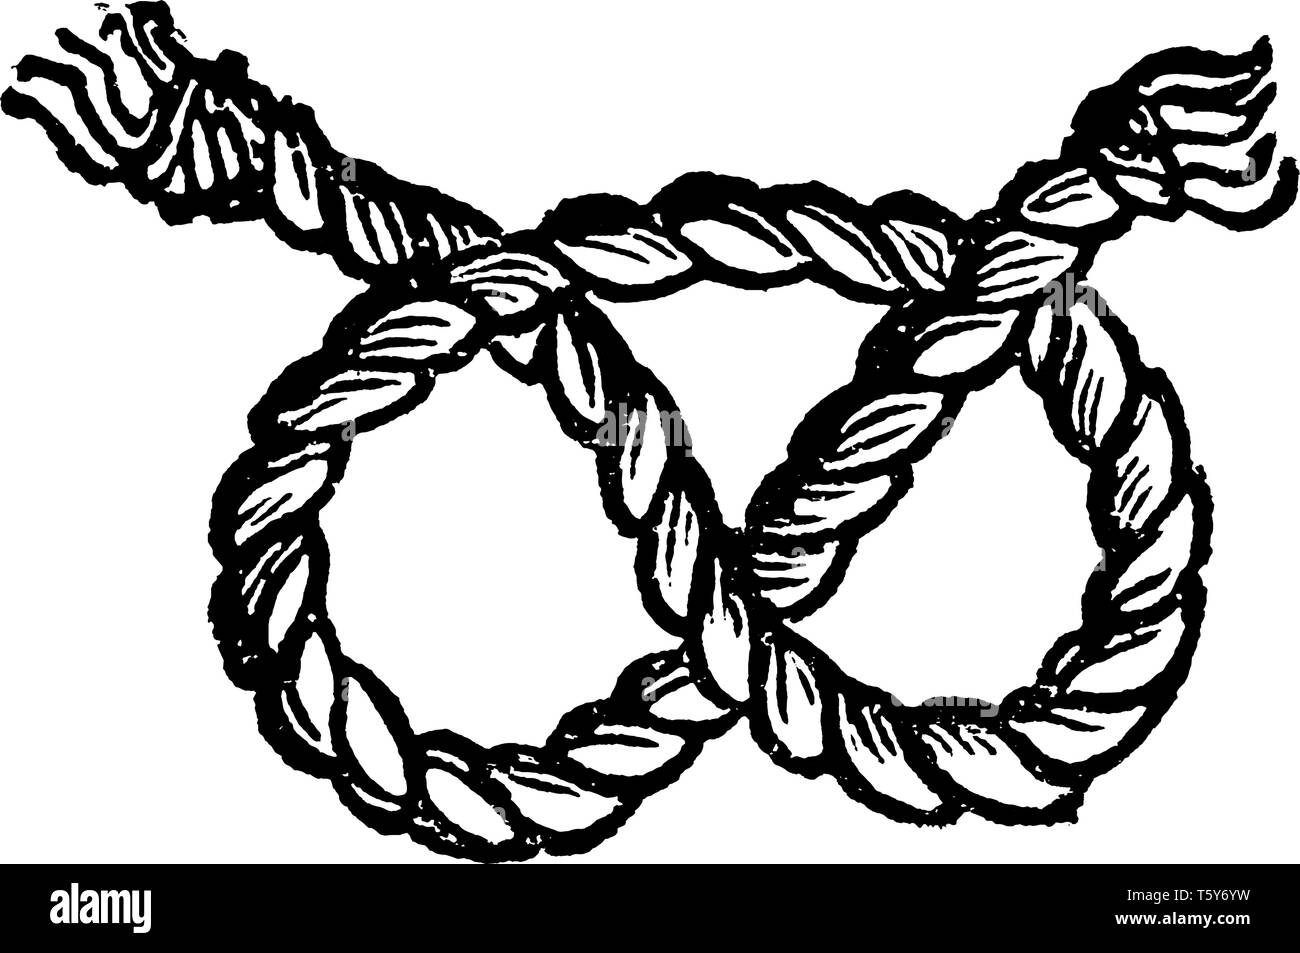 Stafford ist eine markante Drei durchgeschleift Knoten, ist das traditionelle Symbol der englischen Grafschaft, vintage Strichzeichnung oder Gravur Abbildung. Stock Vektor